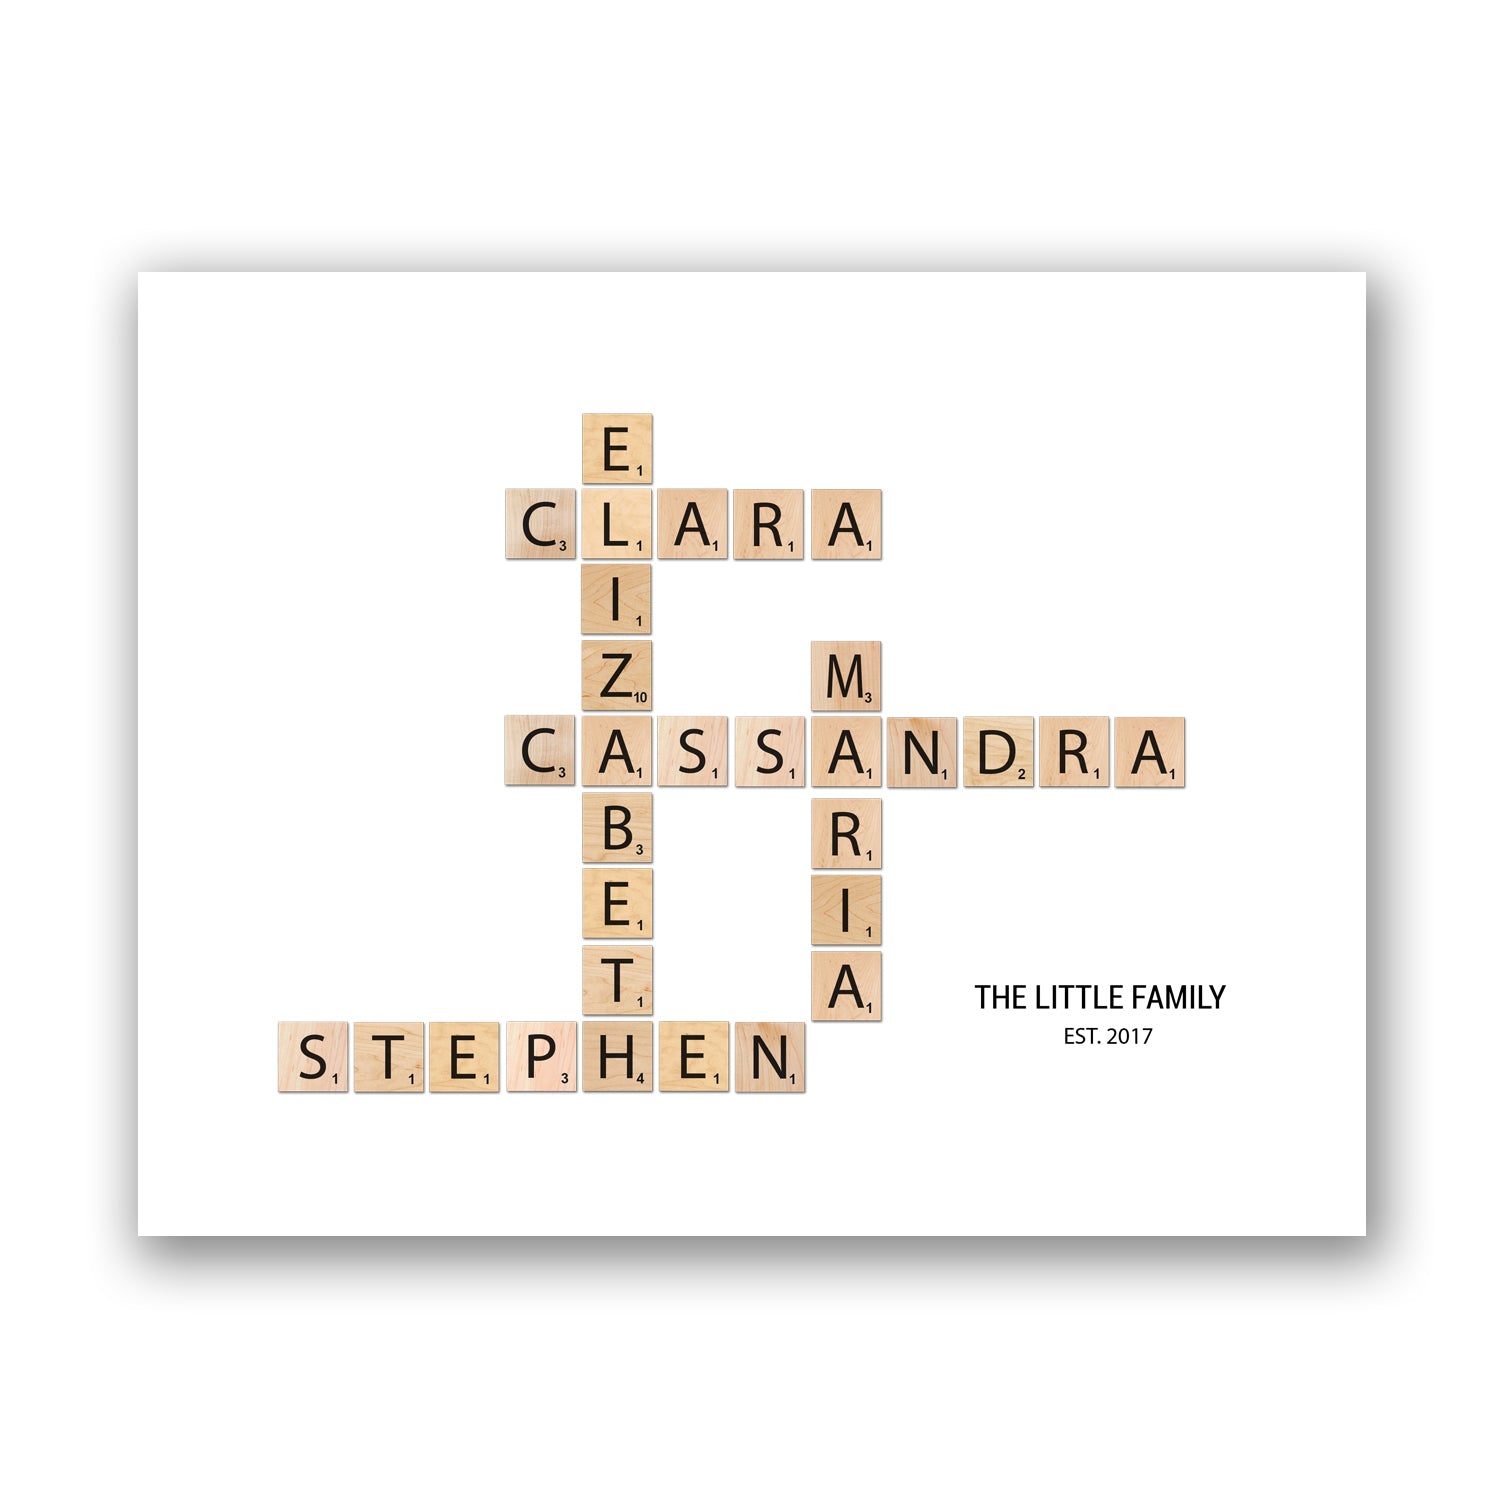 Custom Family Scrabble Tiles